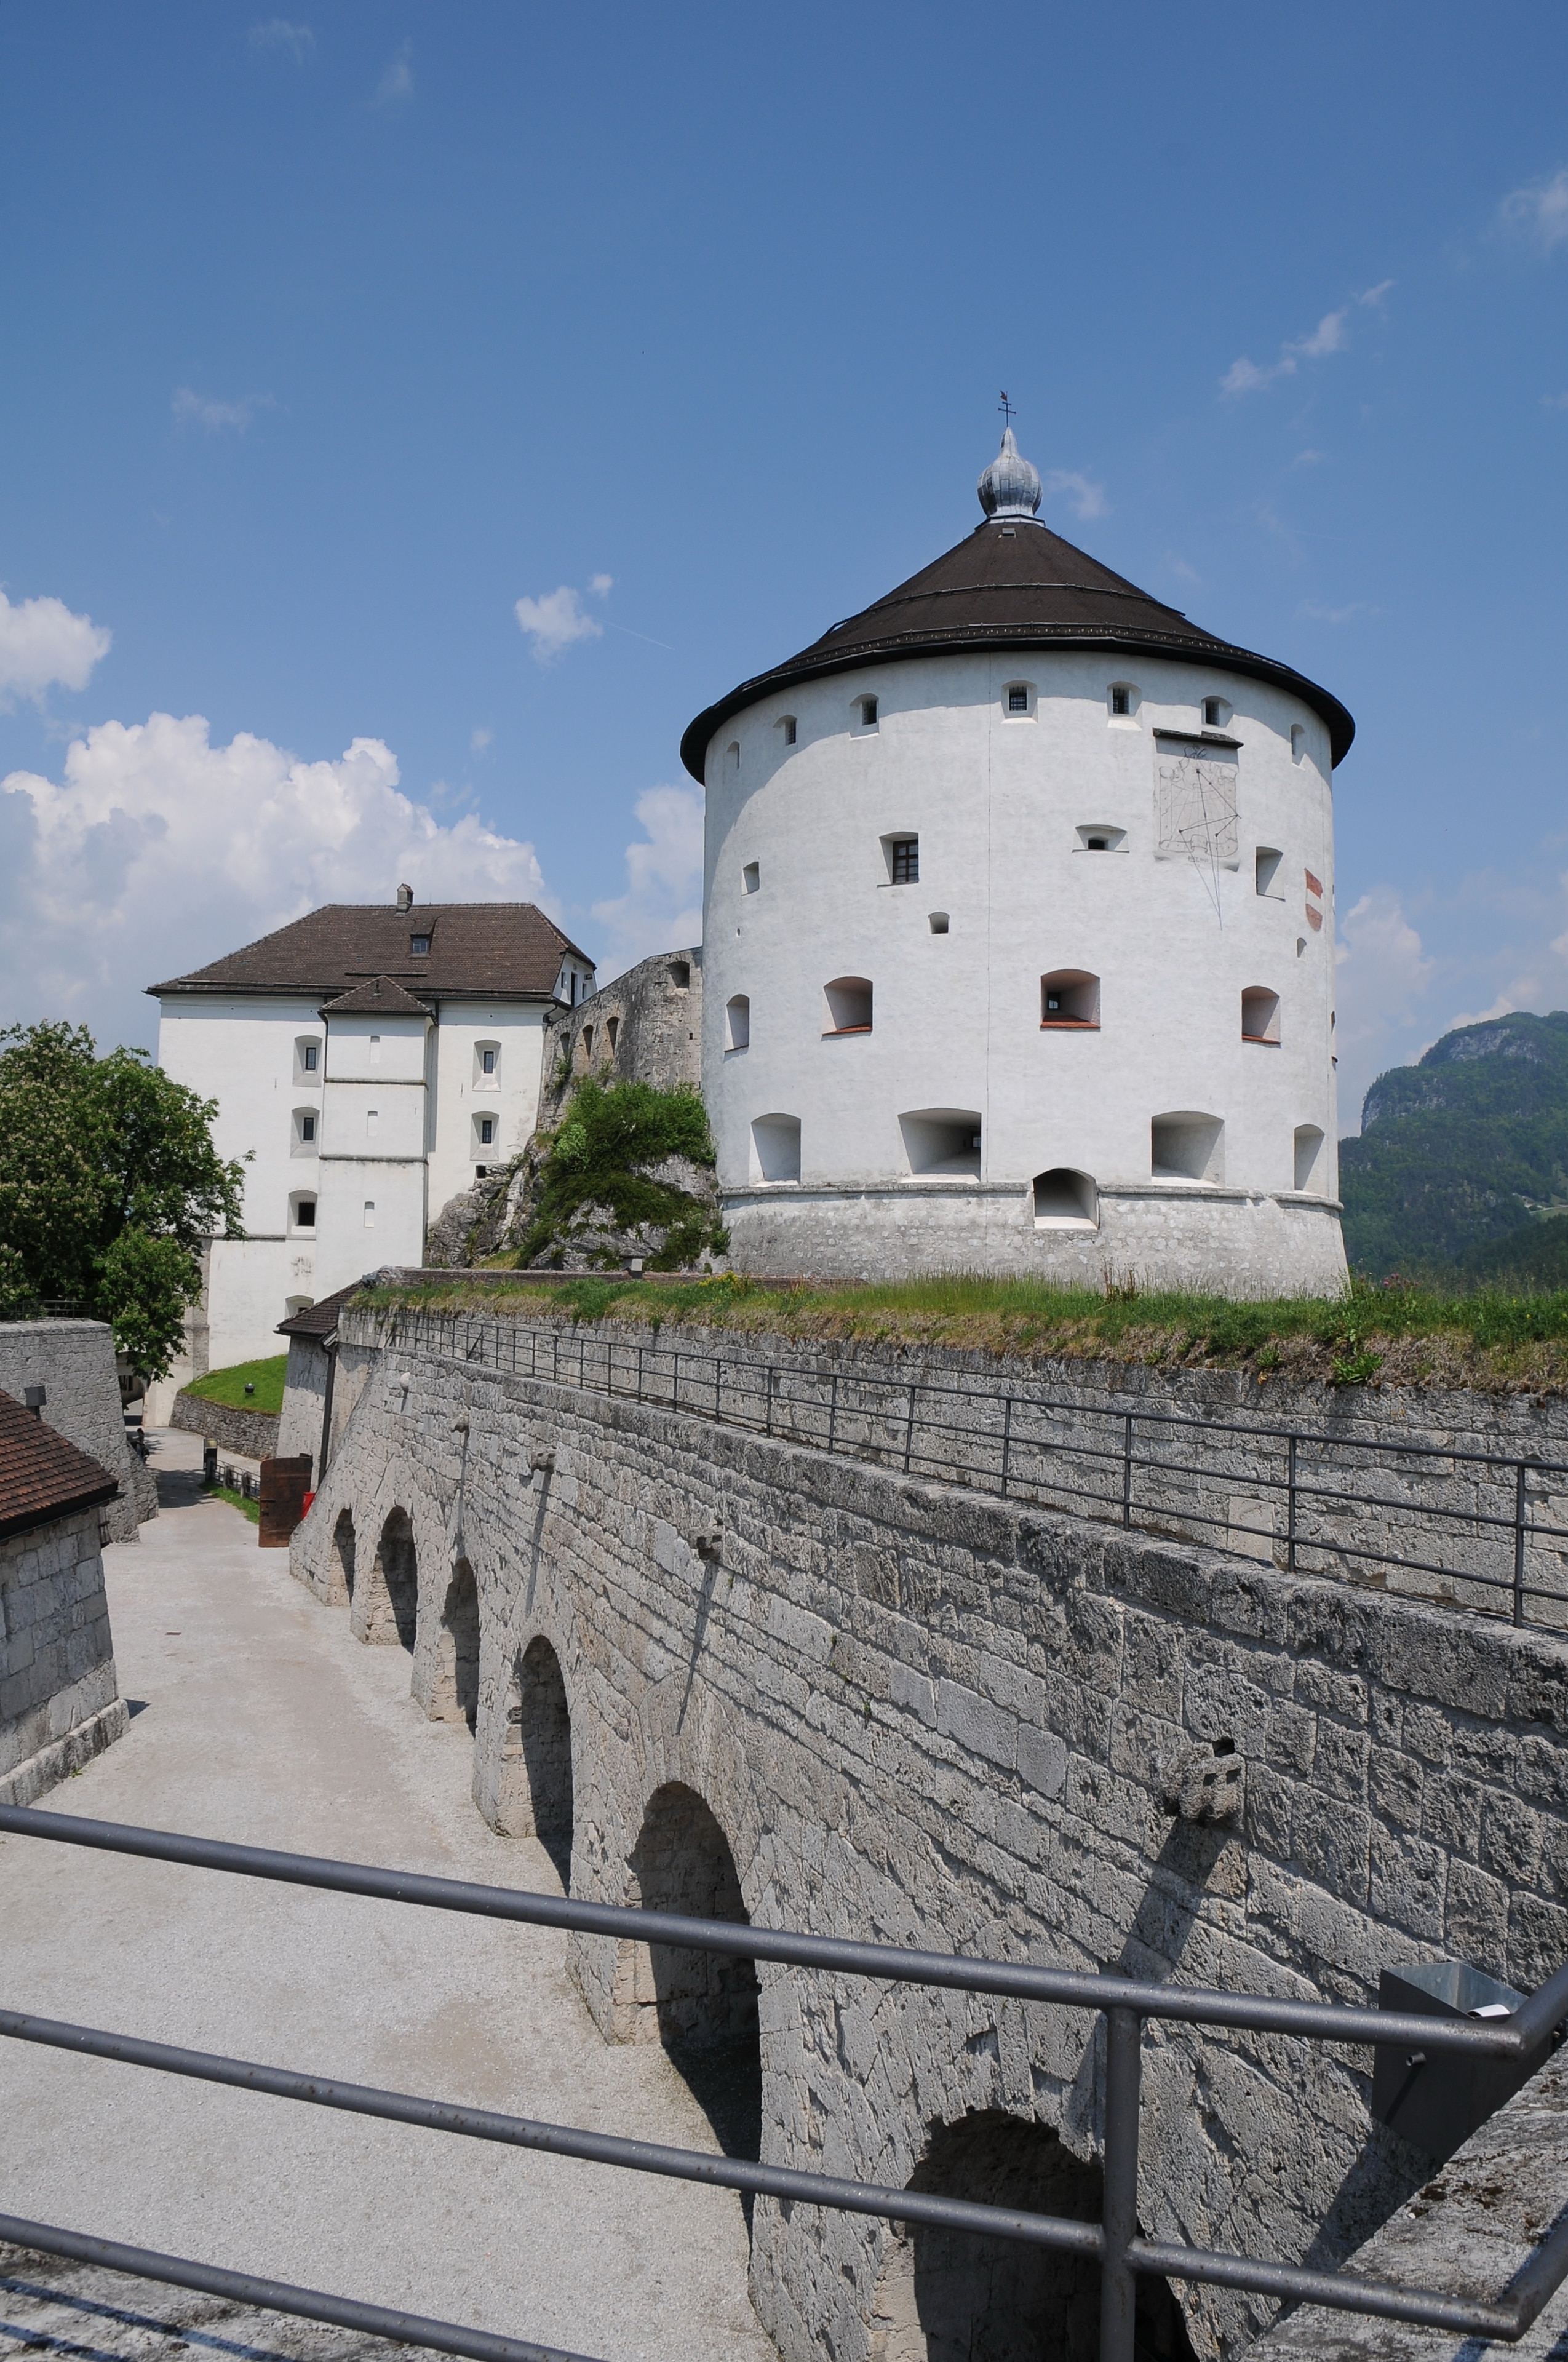 Kufstein Fortress, Tyrol, Austria